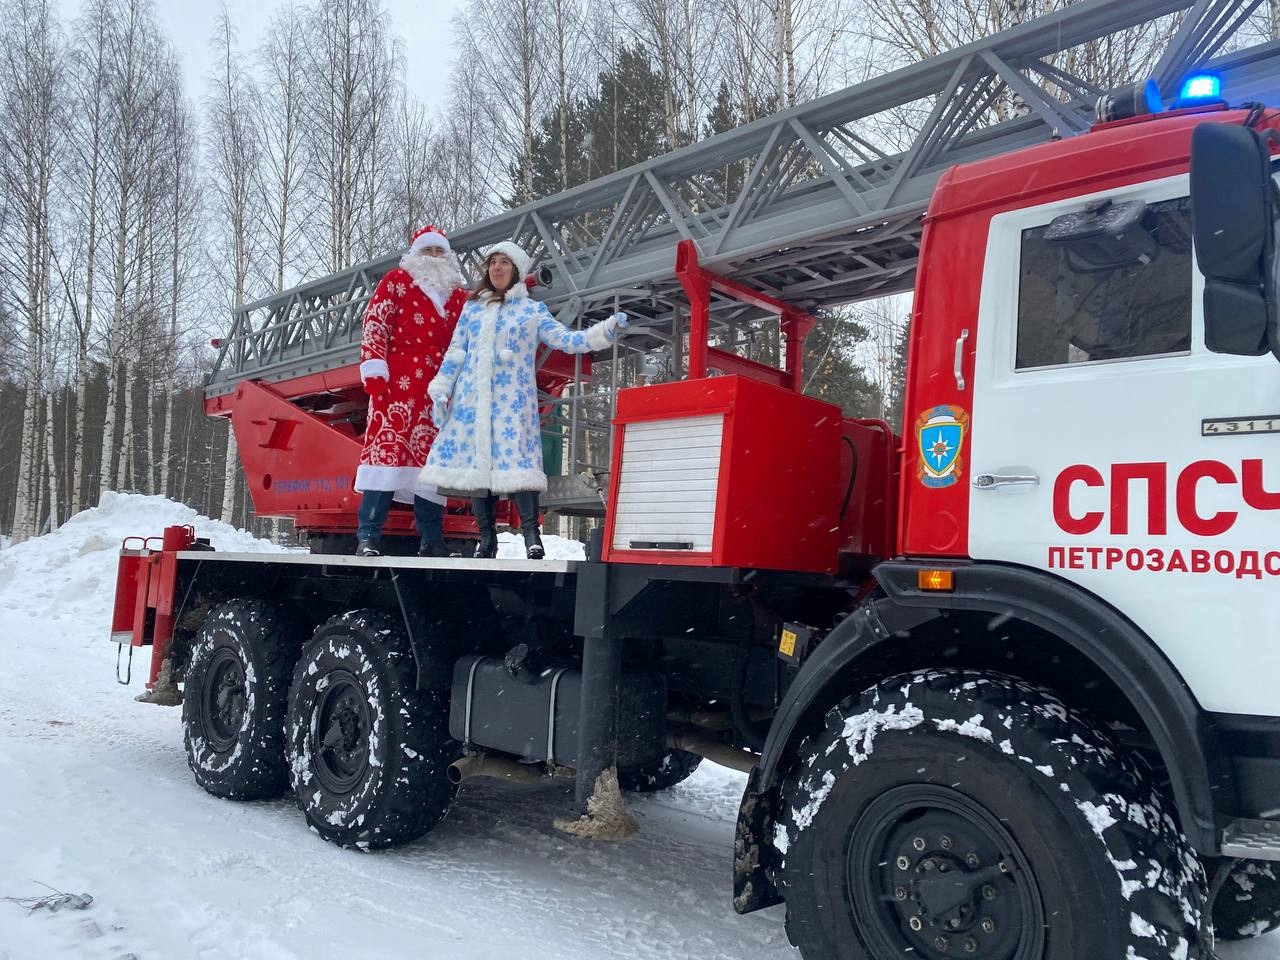 Дед Мороз и Снегурочка на пожарной машине поздравили детей в больнице Петрозаводска